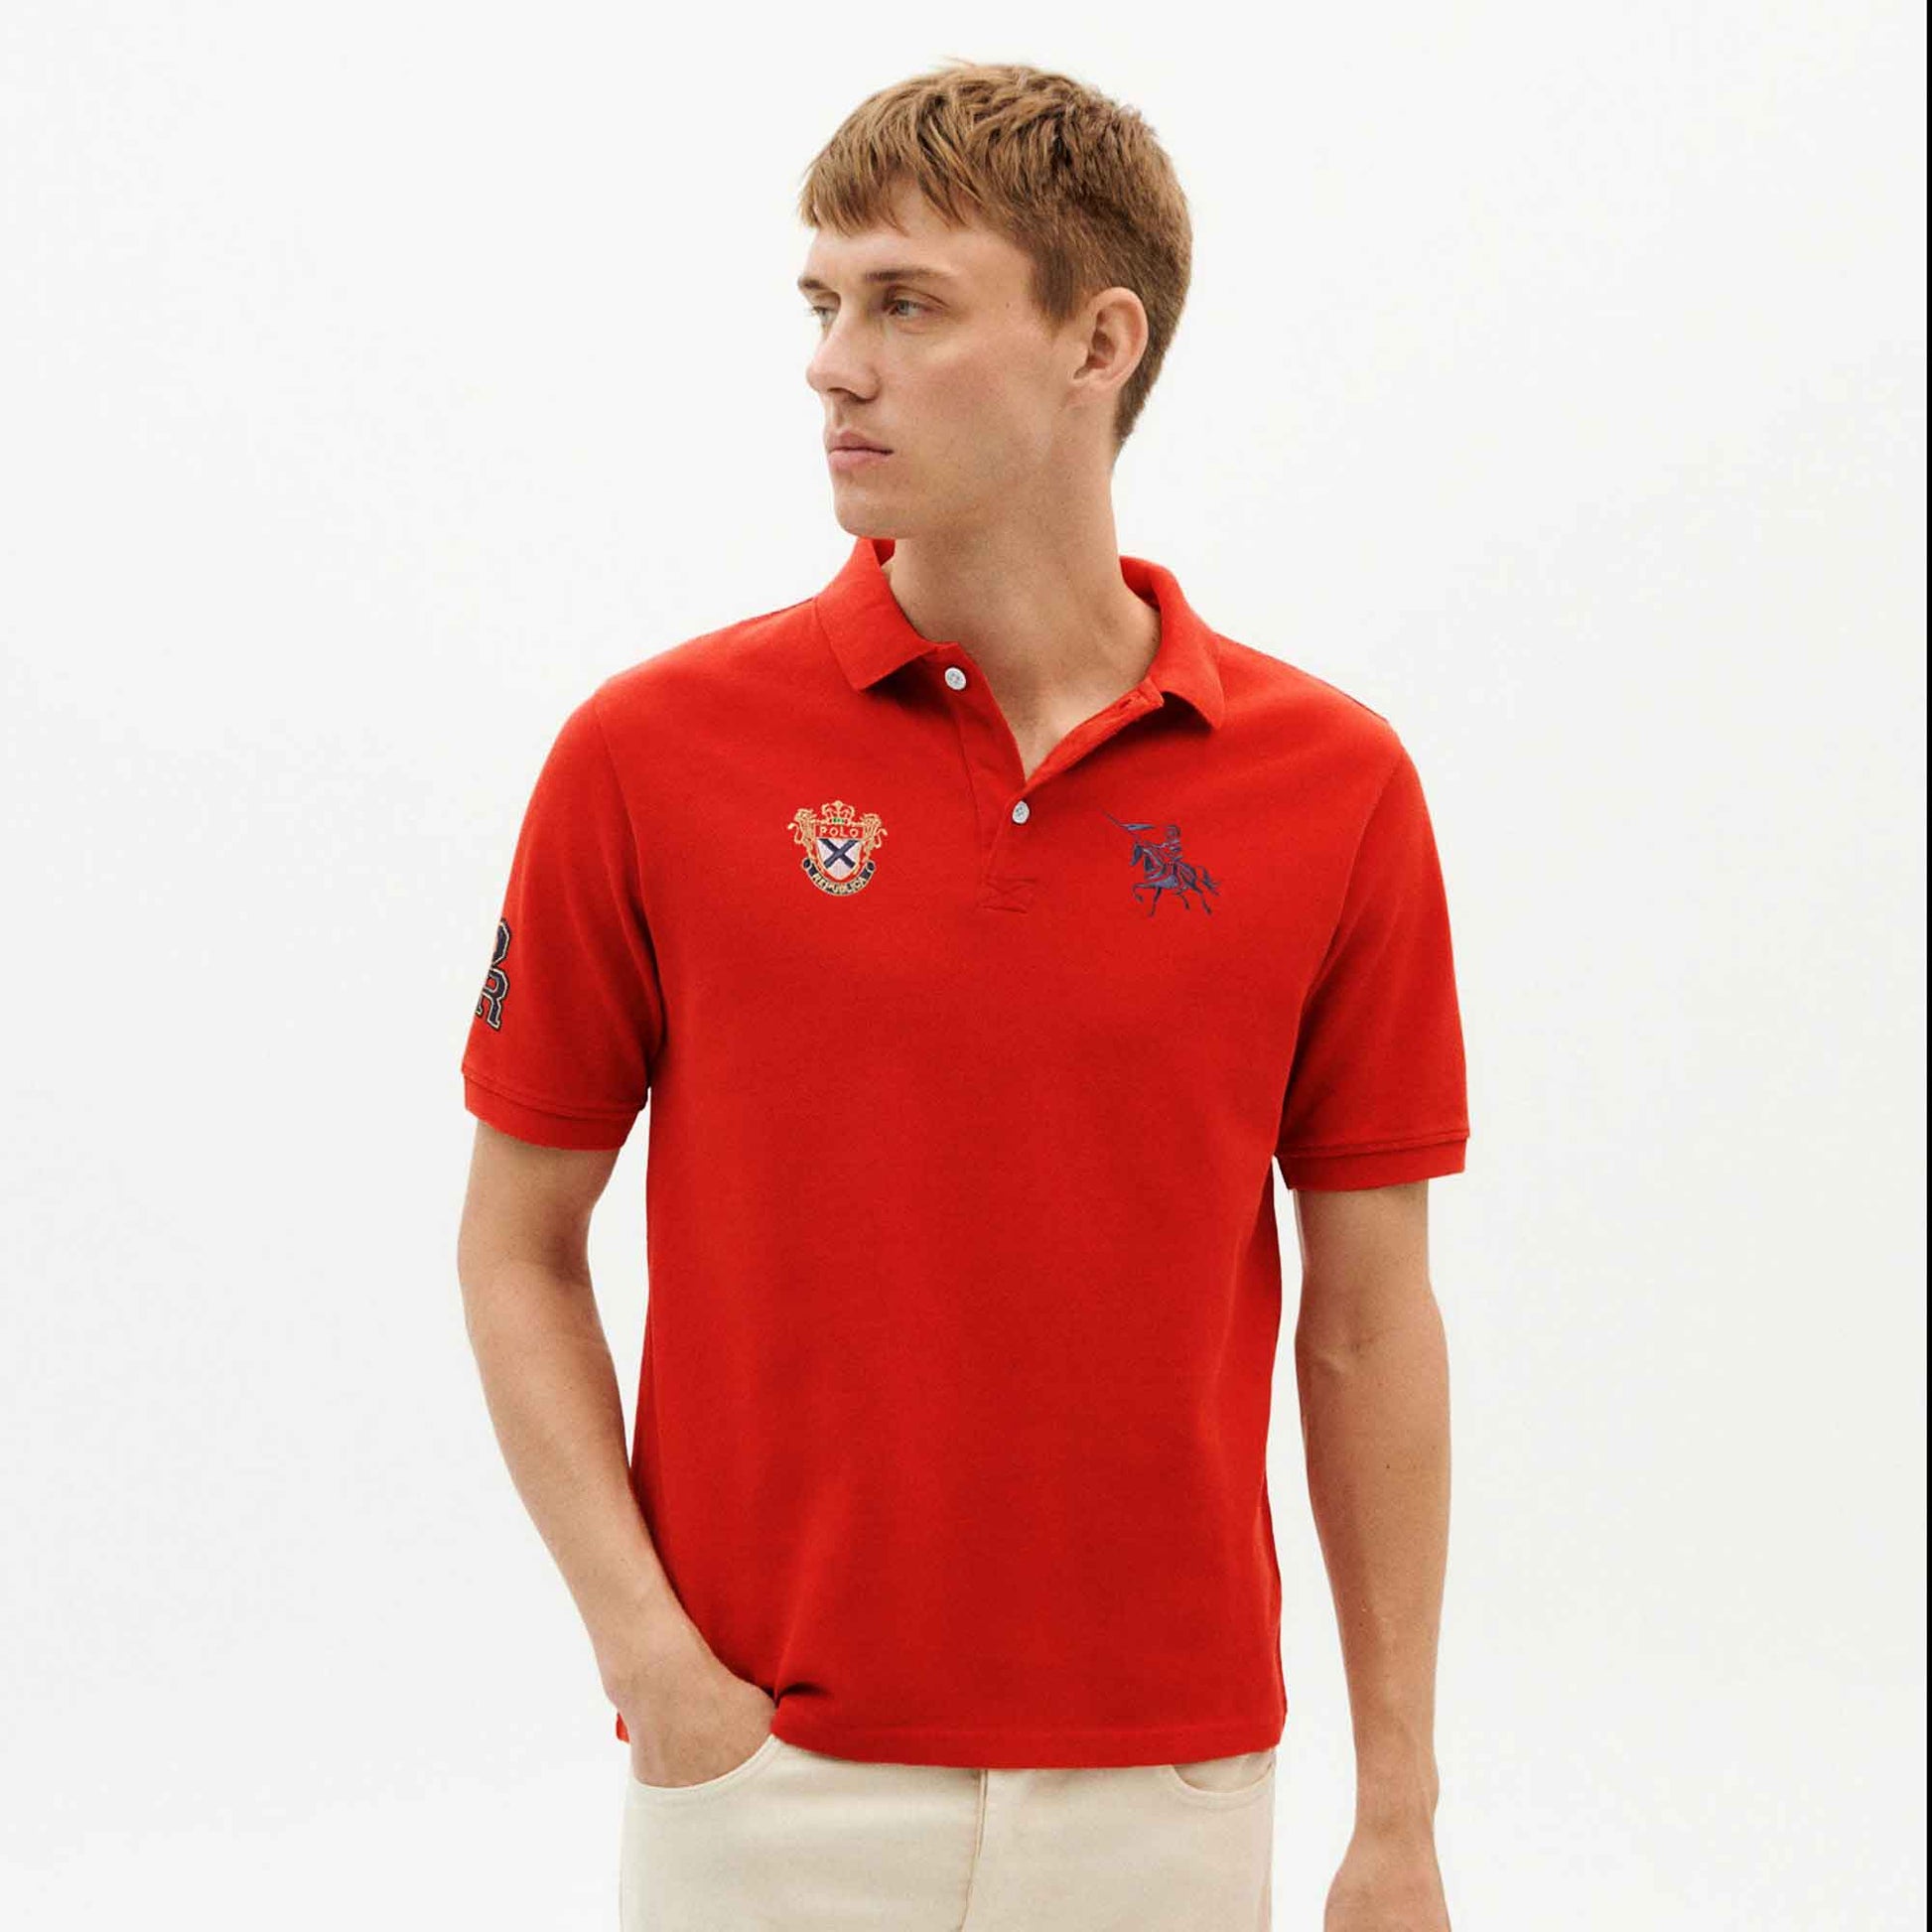 Polo Republica Men's Crest & Cavalry PR Embroidered Short Sleeve Polo Shirt Men's Polo Shirt Polo Republica Red S 